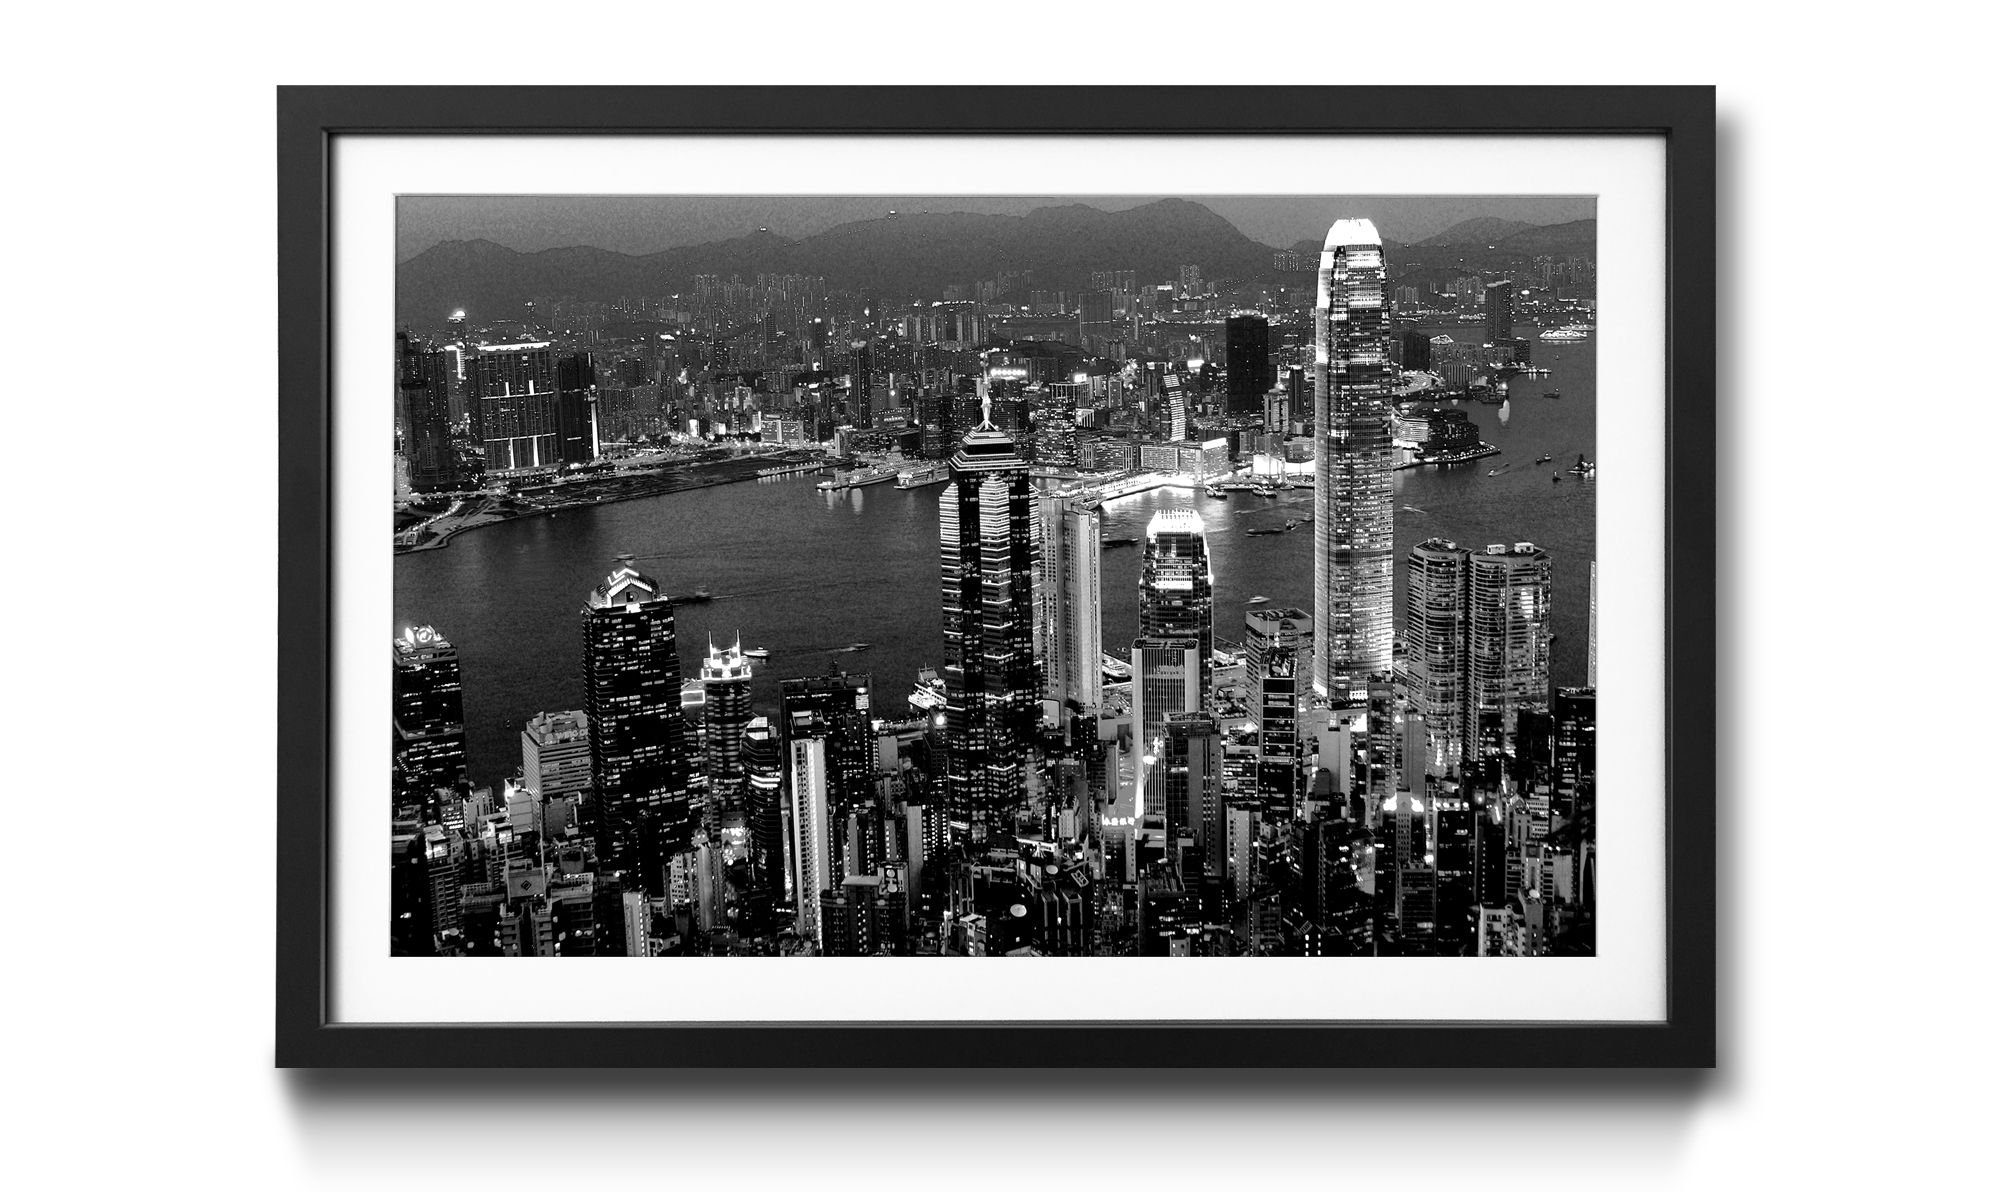 WandbilderXXL Kunstdruck Hong Kong View, Städte, Wandbild, in 4 Größen erhältlich